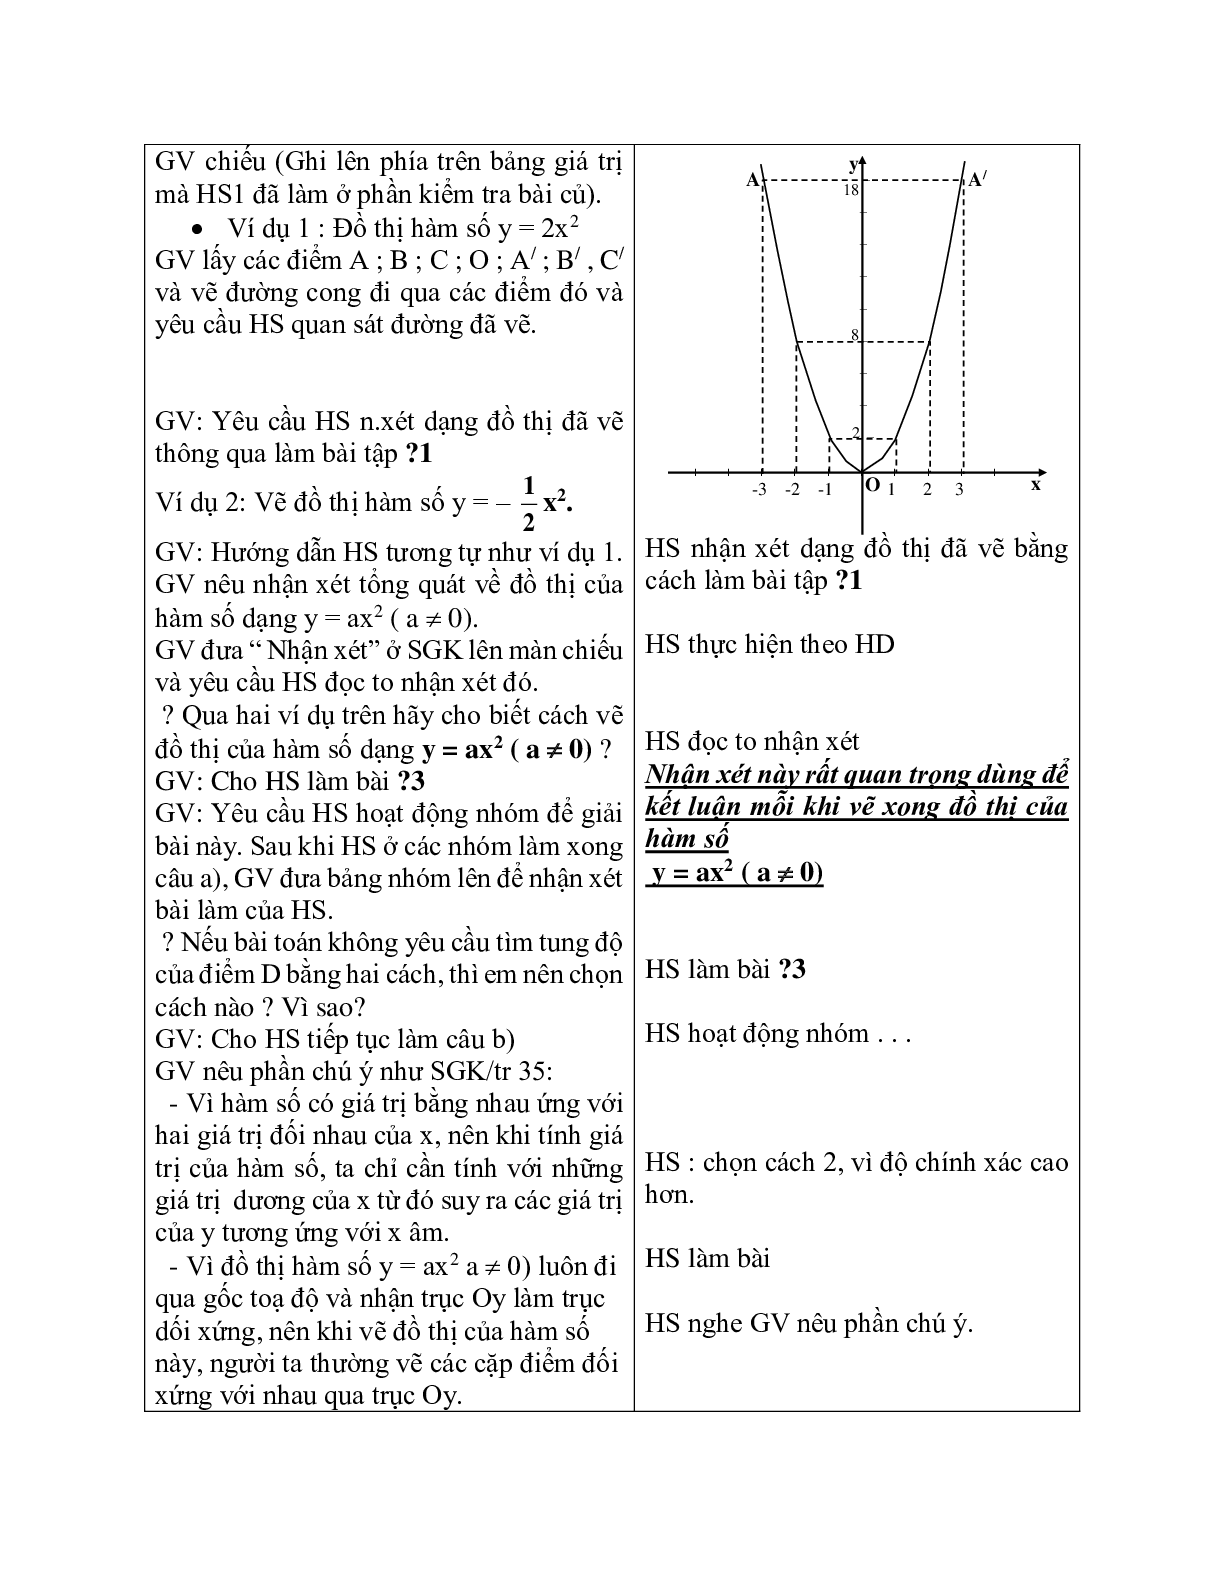 Giáo án Đồ thị hàm số y = ax^2 (2023) mới nhất - Toán 9 (trang 2)